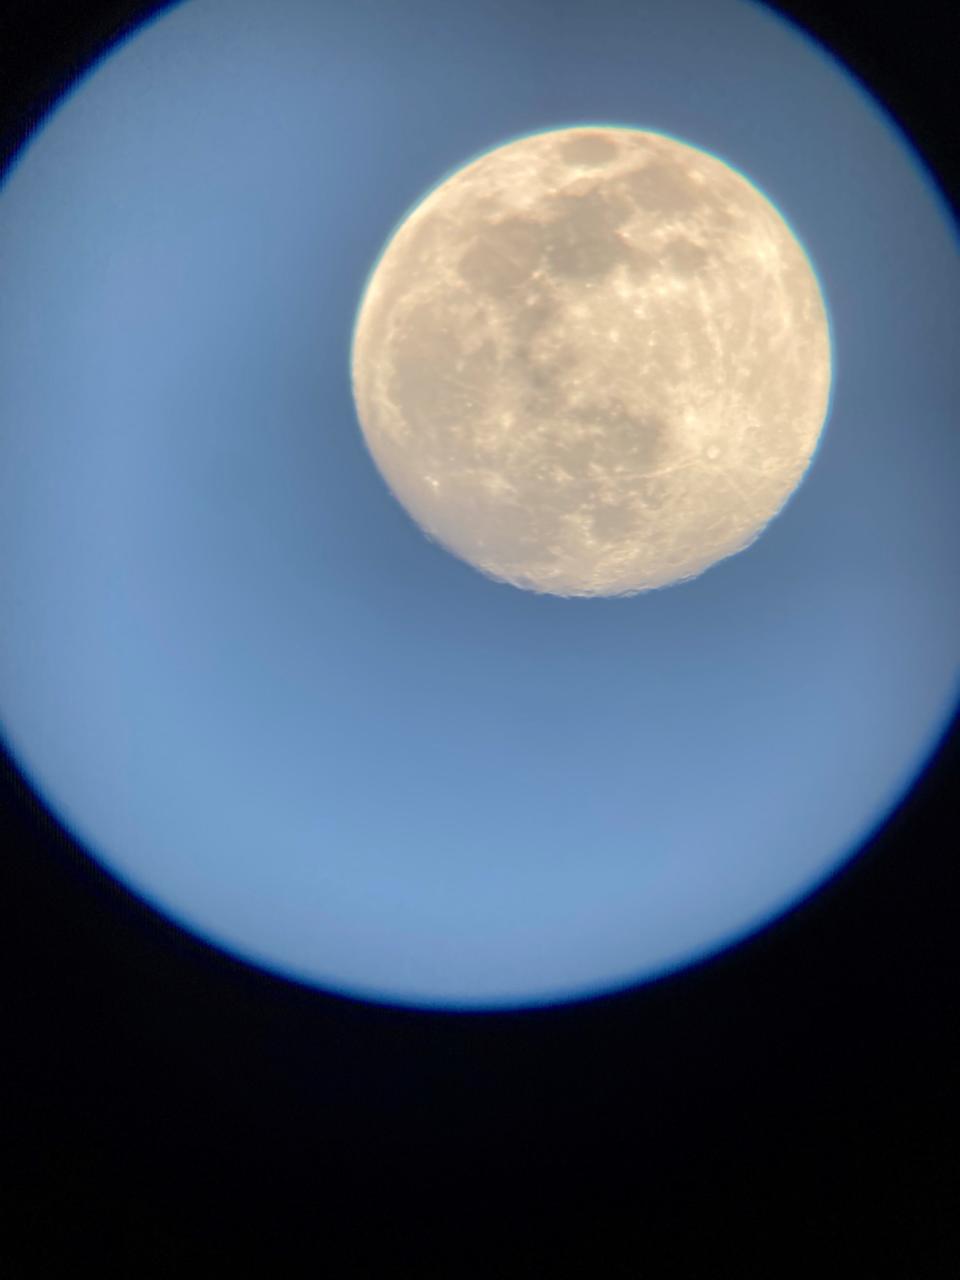 A view of the moon through a Celestron telescope.